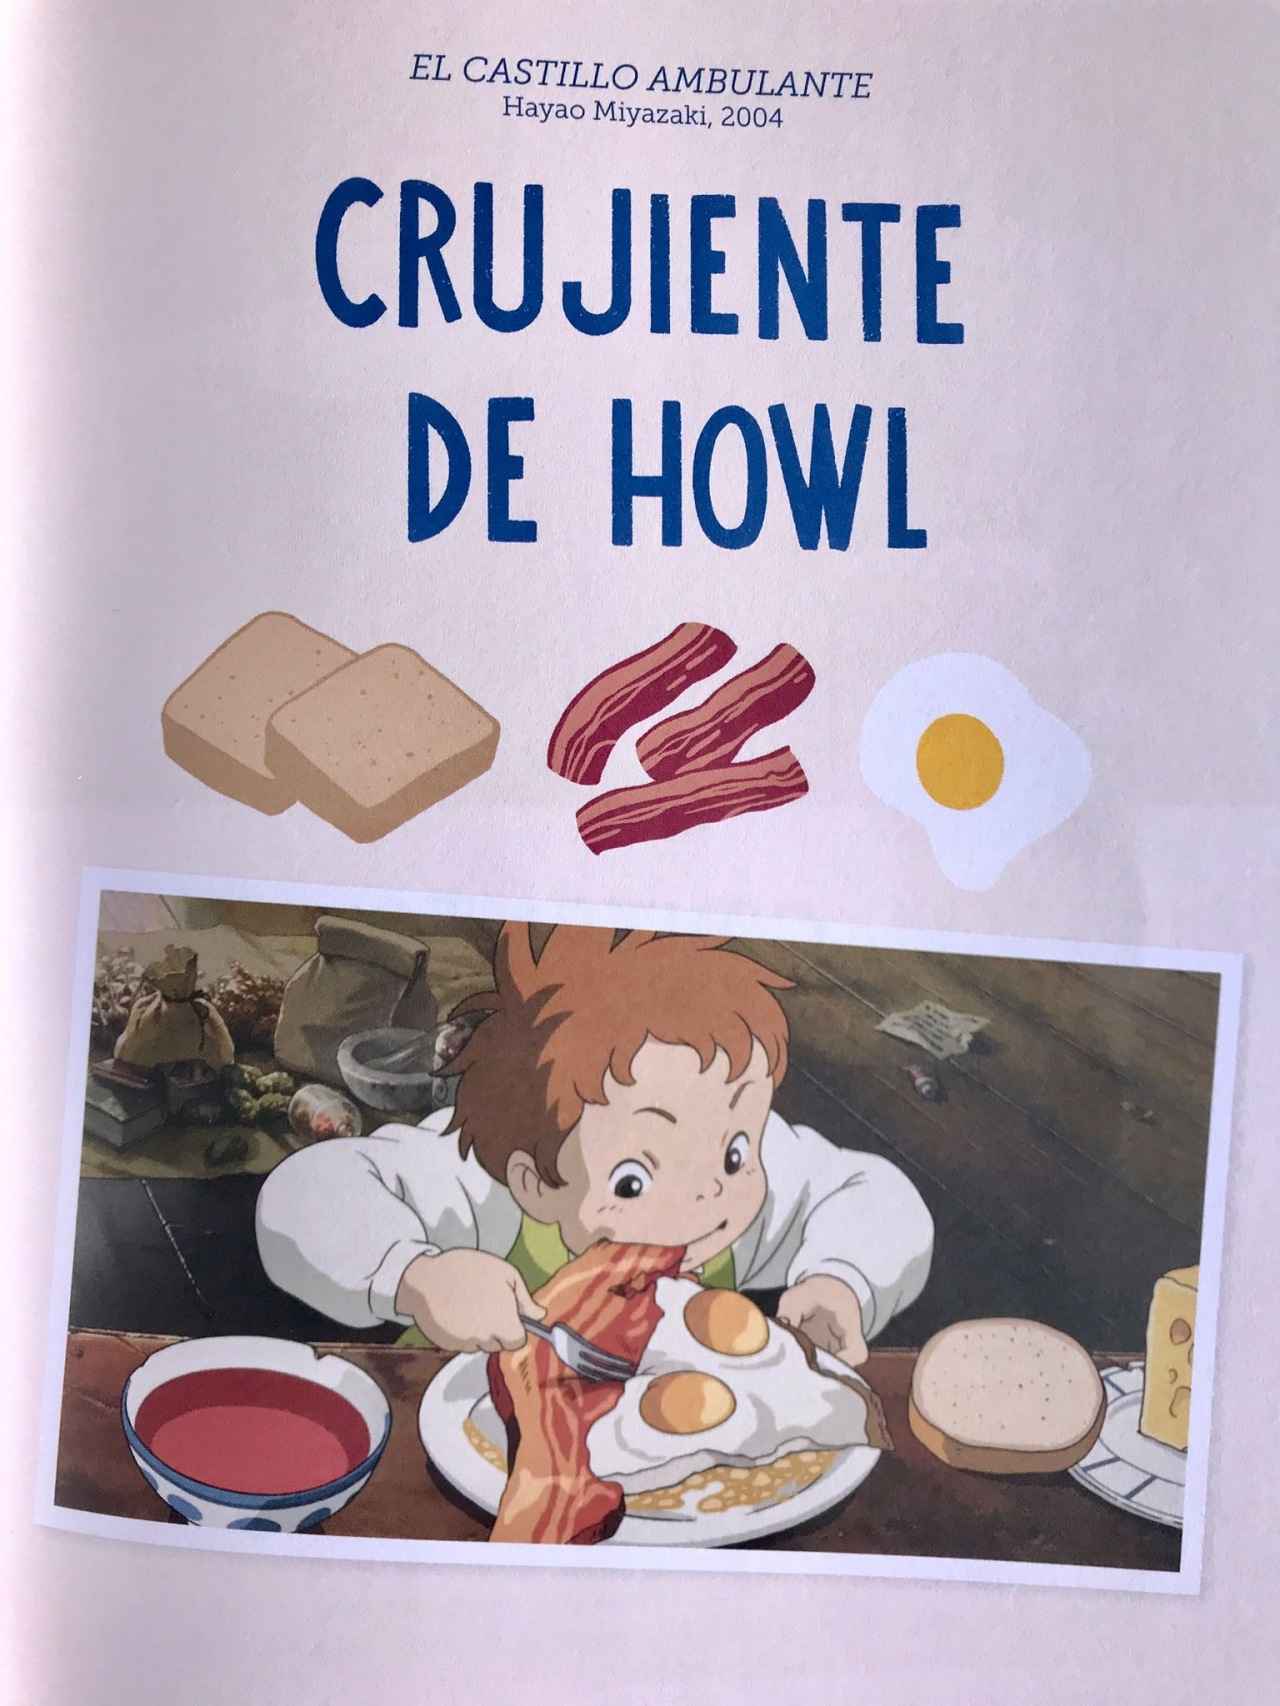 Imagen del libro Las recetas de las películas de Studio Ghibli